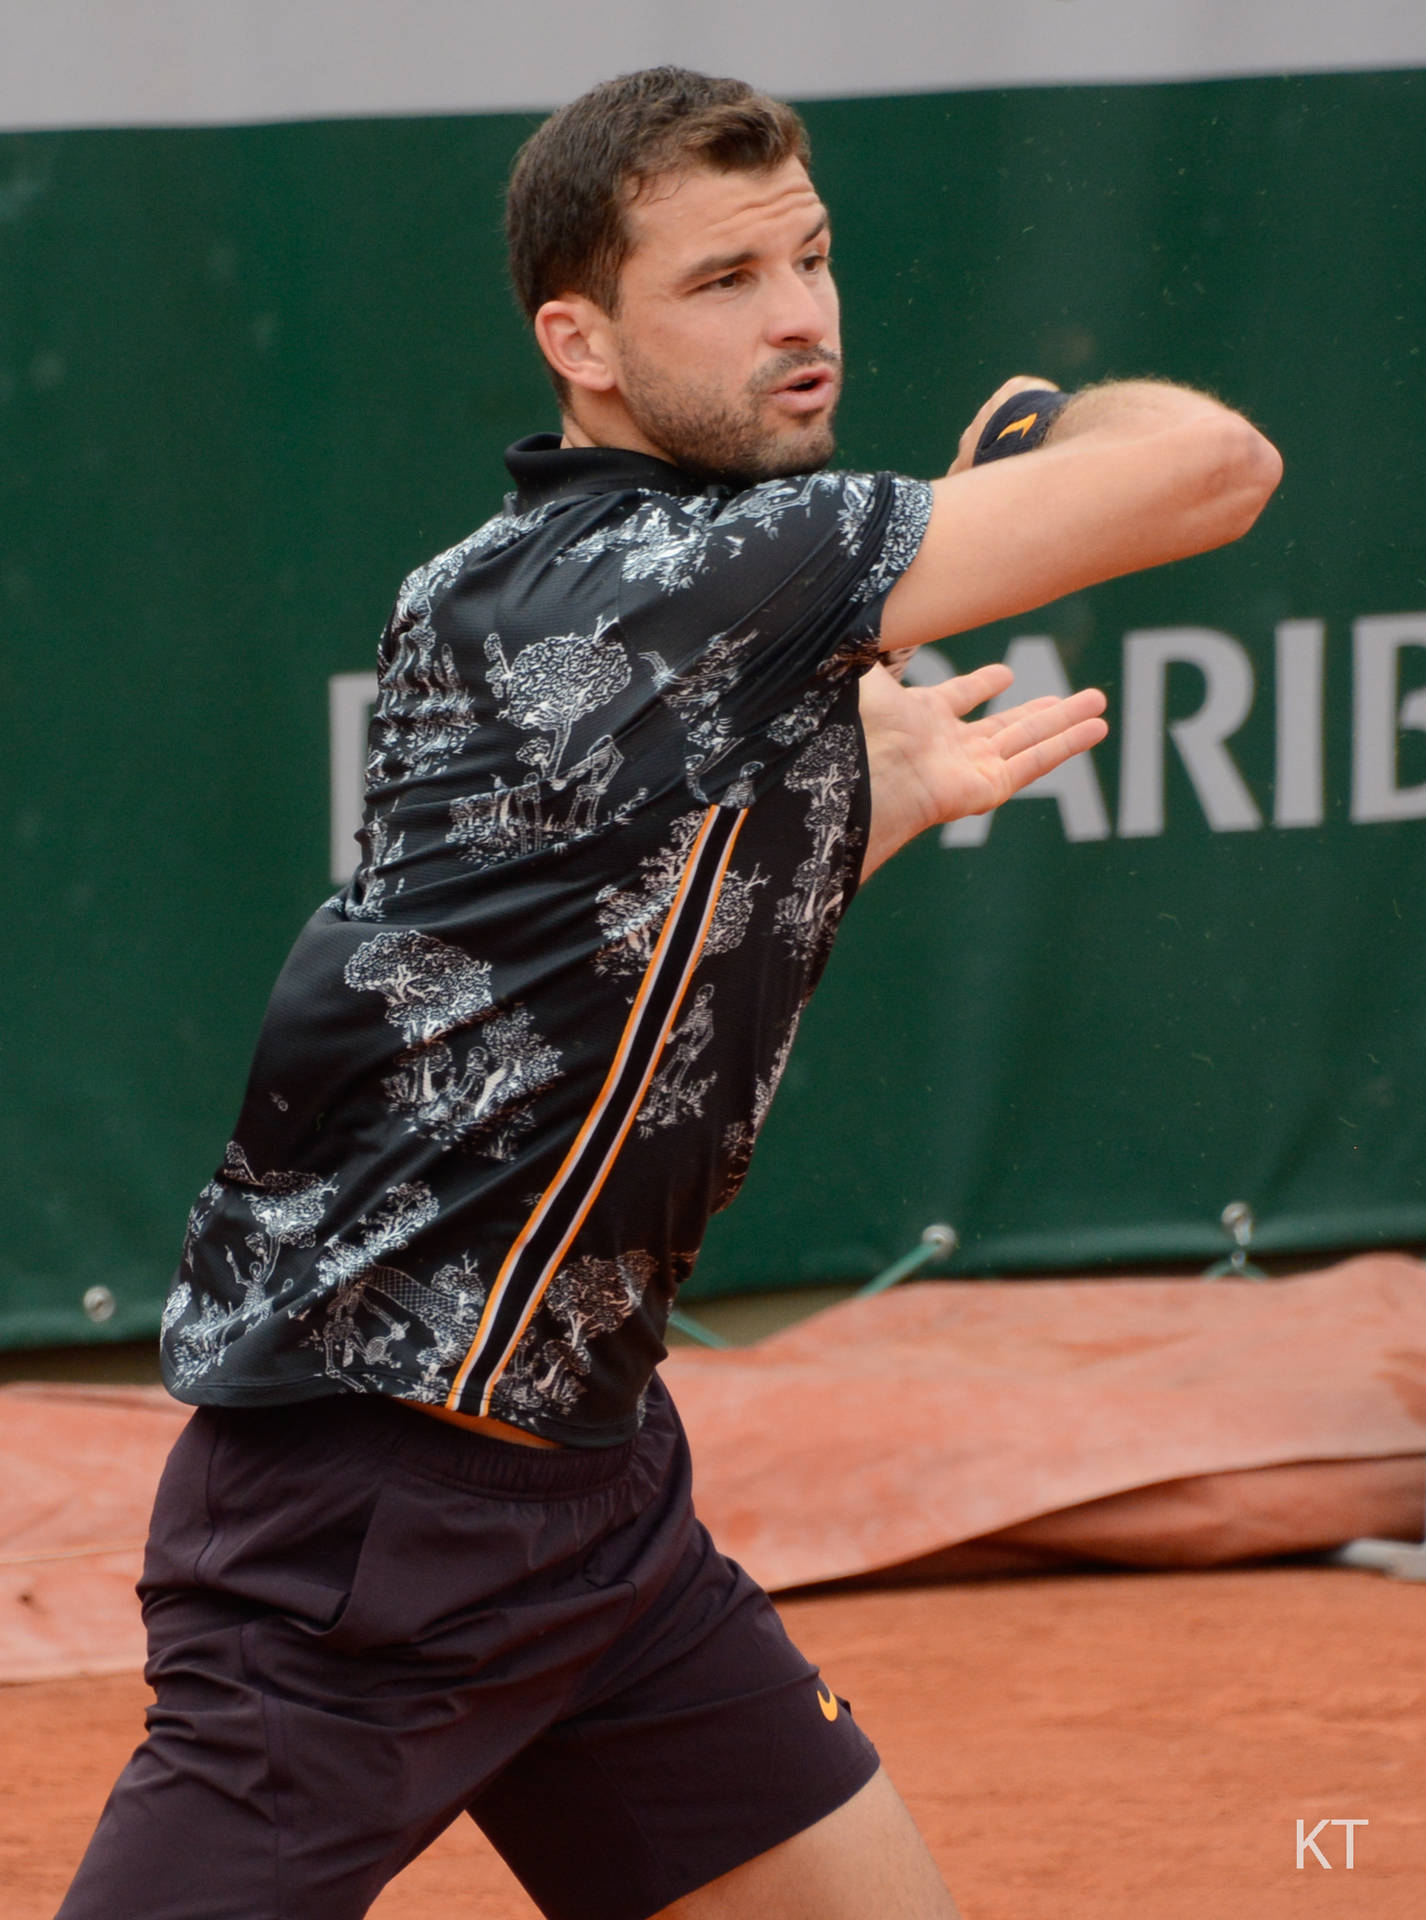 Grigordimitrov Vistiendo Una Camiseta De Tenis Estampada. Fondo de pantalla